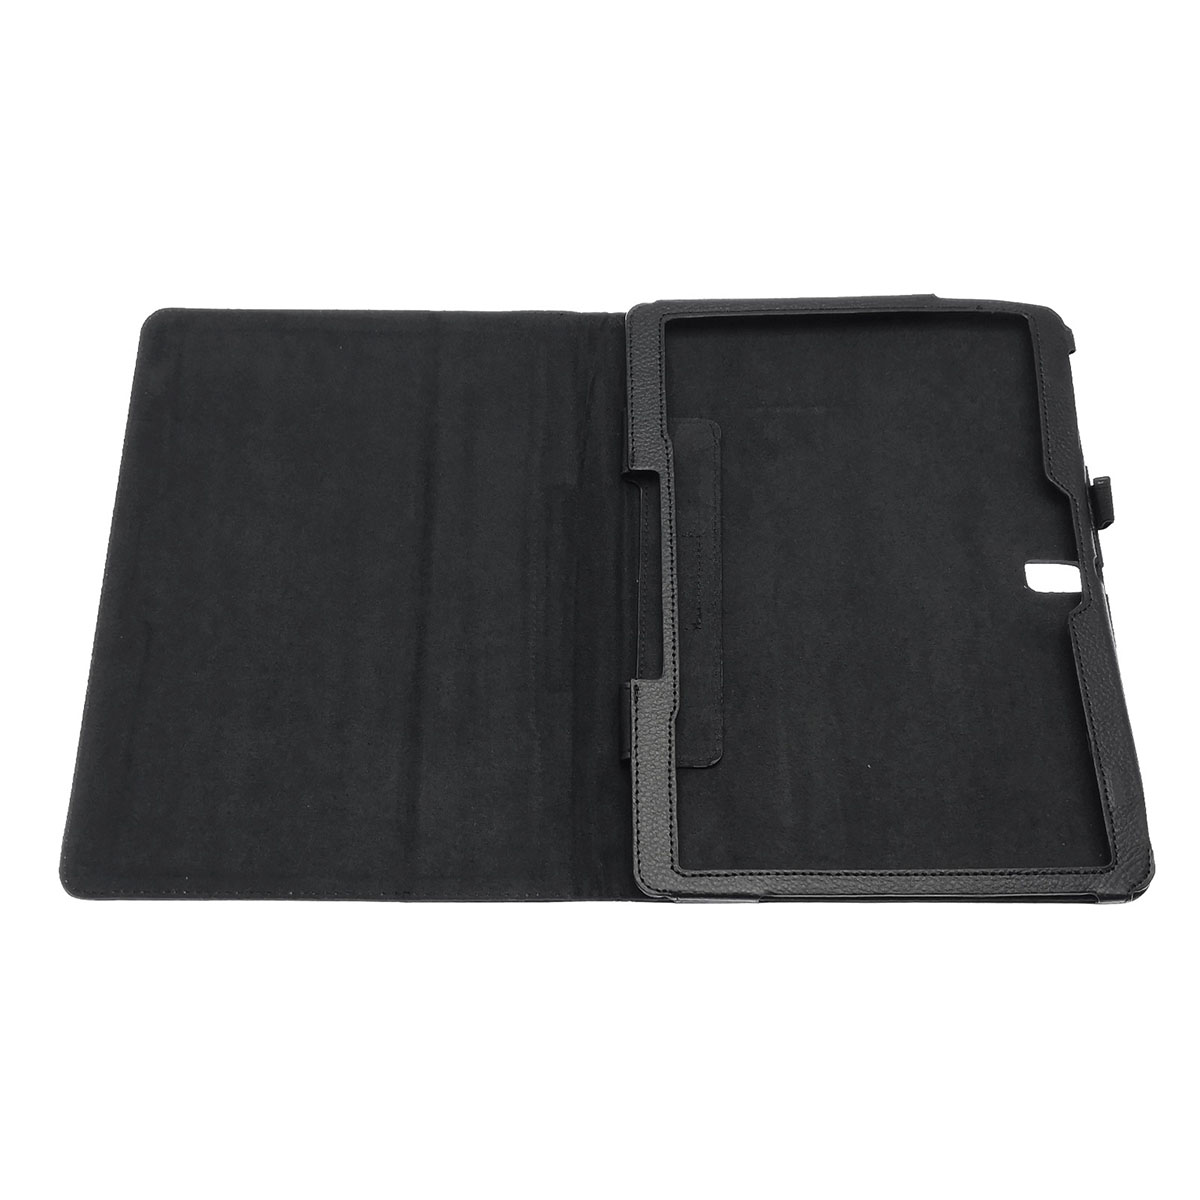 Чехол книжка для SAMSUNG Galaxy Tab S 10.5 (SM-T800, SM-T805), экокожа, цвет черный.